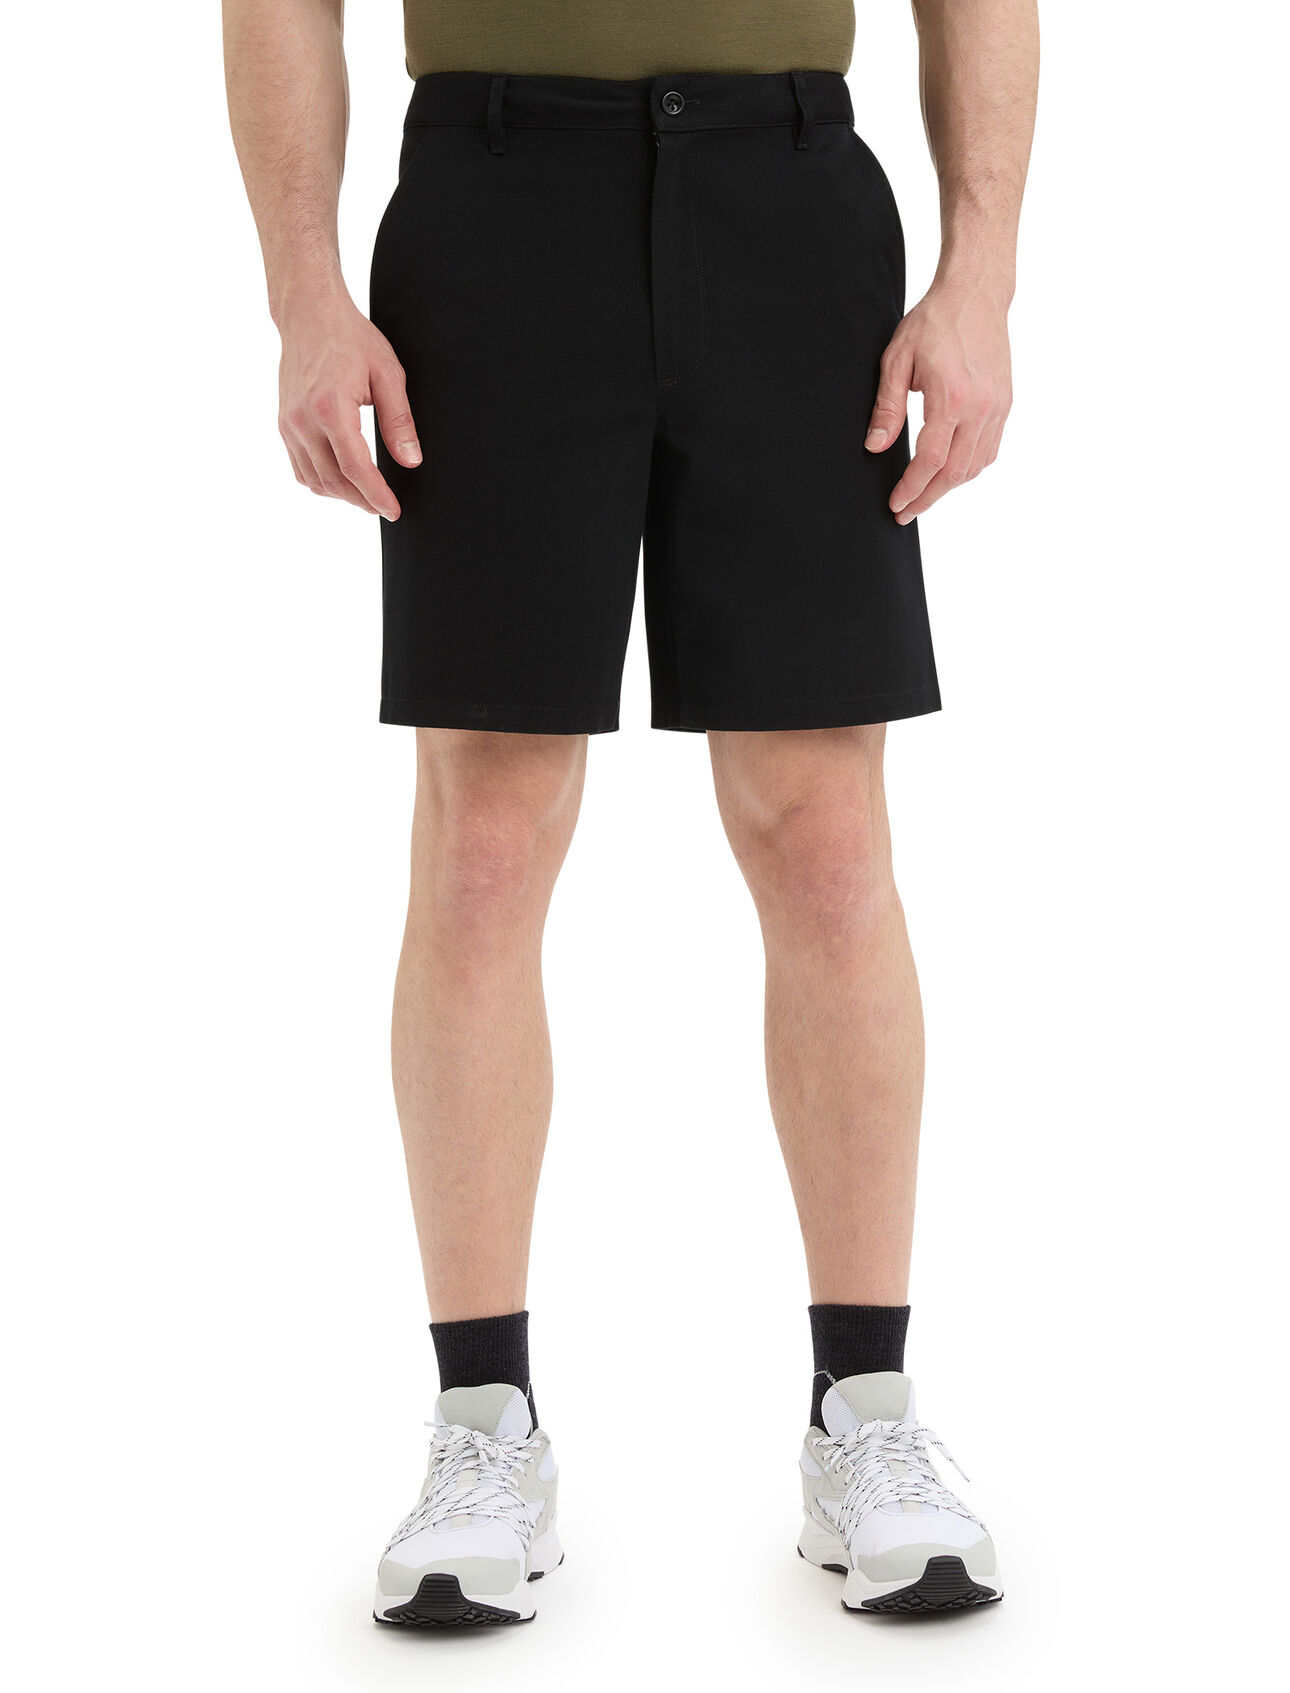 Herr Berlin shorts i merino  Berlin shorts är ett par klassiska, mångsidiga chinoshorts med en unik och hållbar blandning av endast naturlig merinoull och ekologisk bomull.